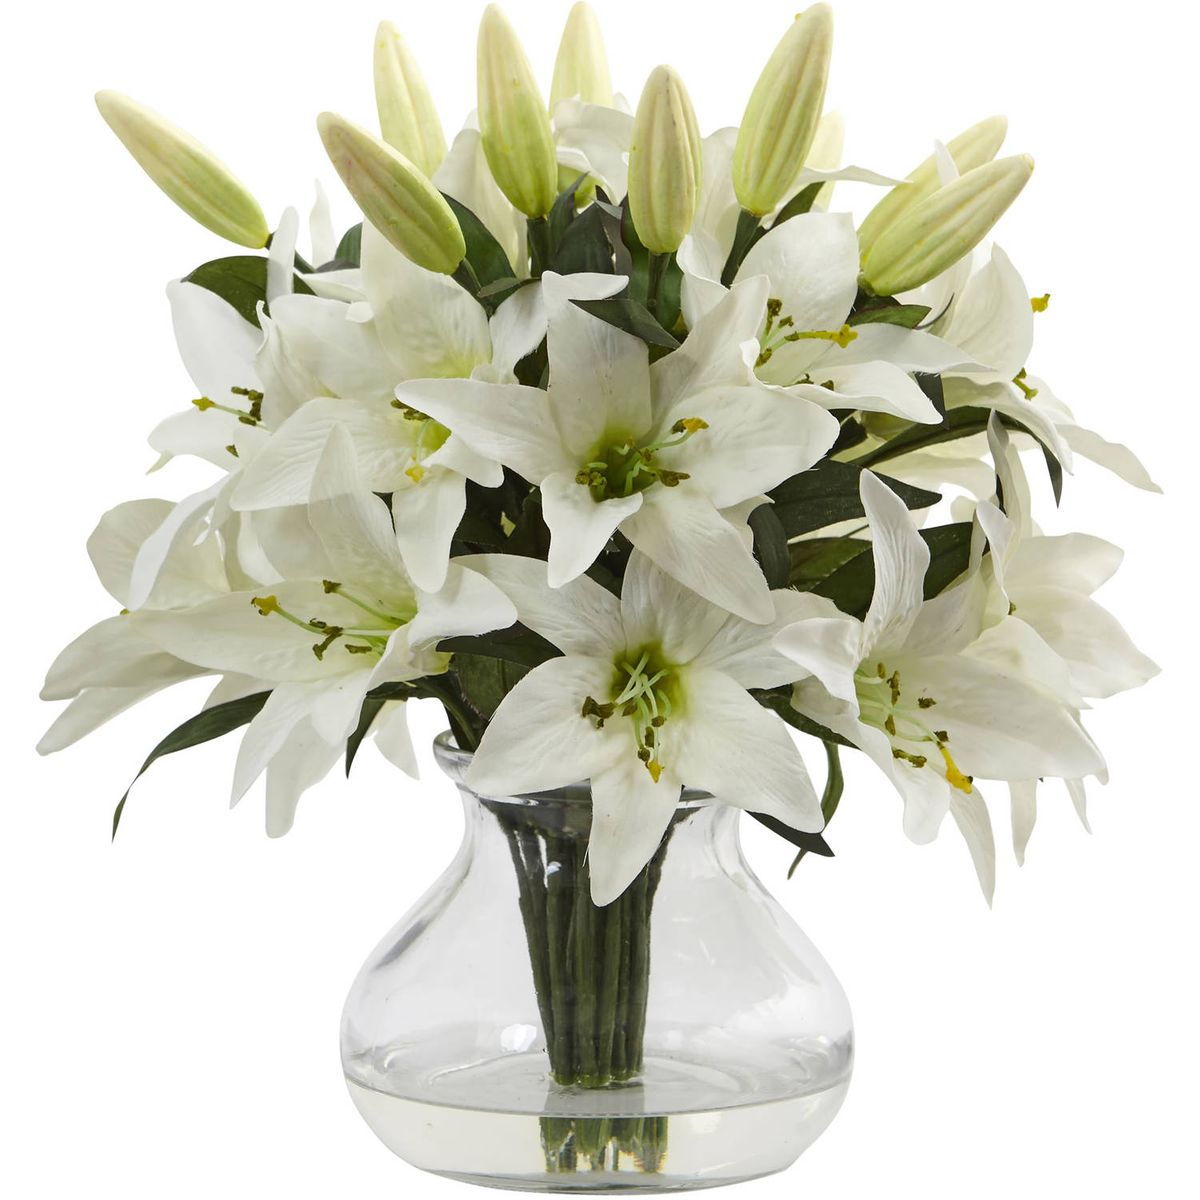 楽天Walmart 楽天市場店[RDY] [送料無料] Nearly Natural ホワイトリリー 造花アレンジメント 花器付 [楽天海外通販] | Nearly Natural White Lily Artificial Flower Arrangement with Vase